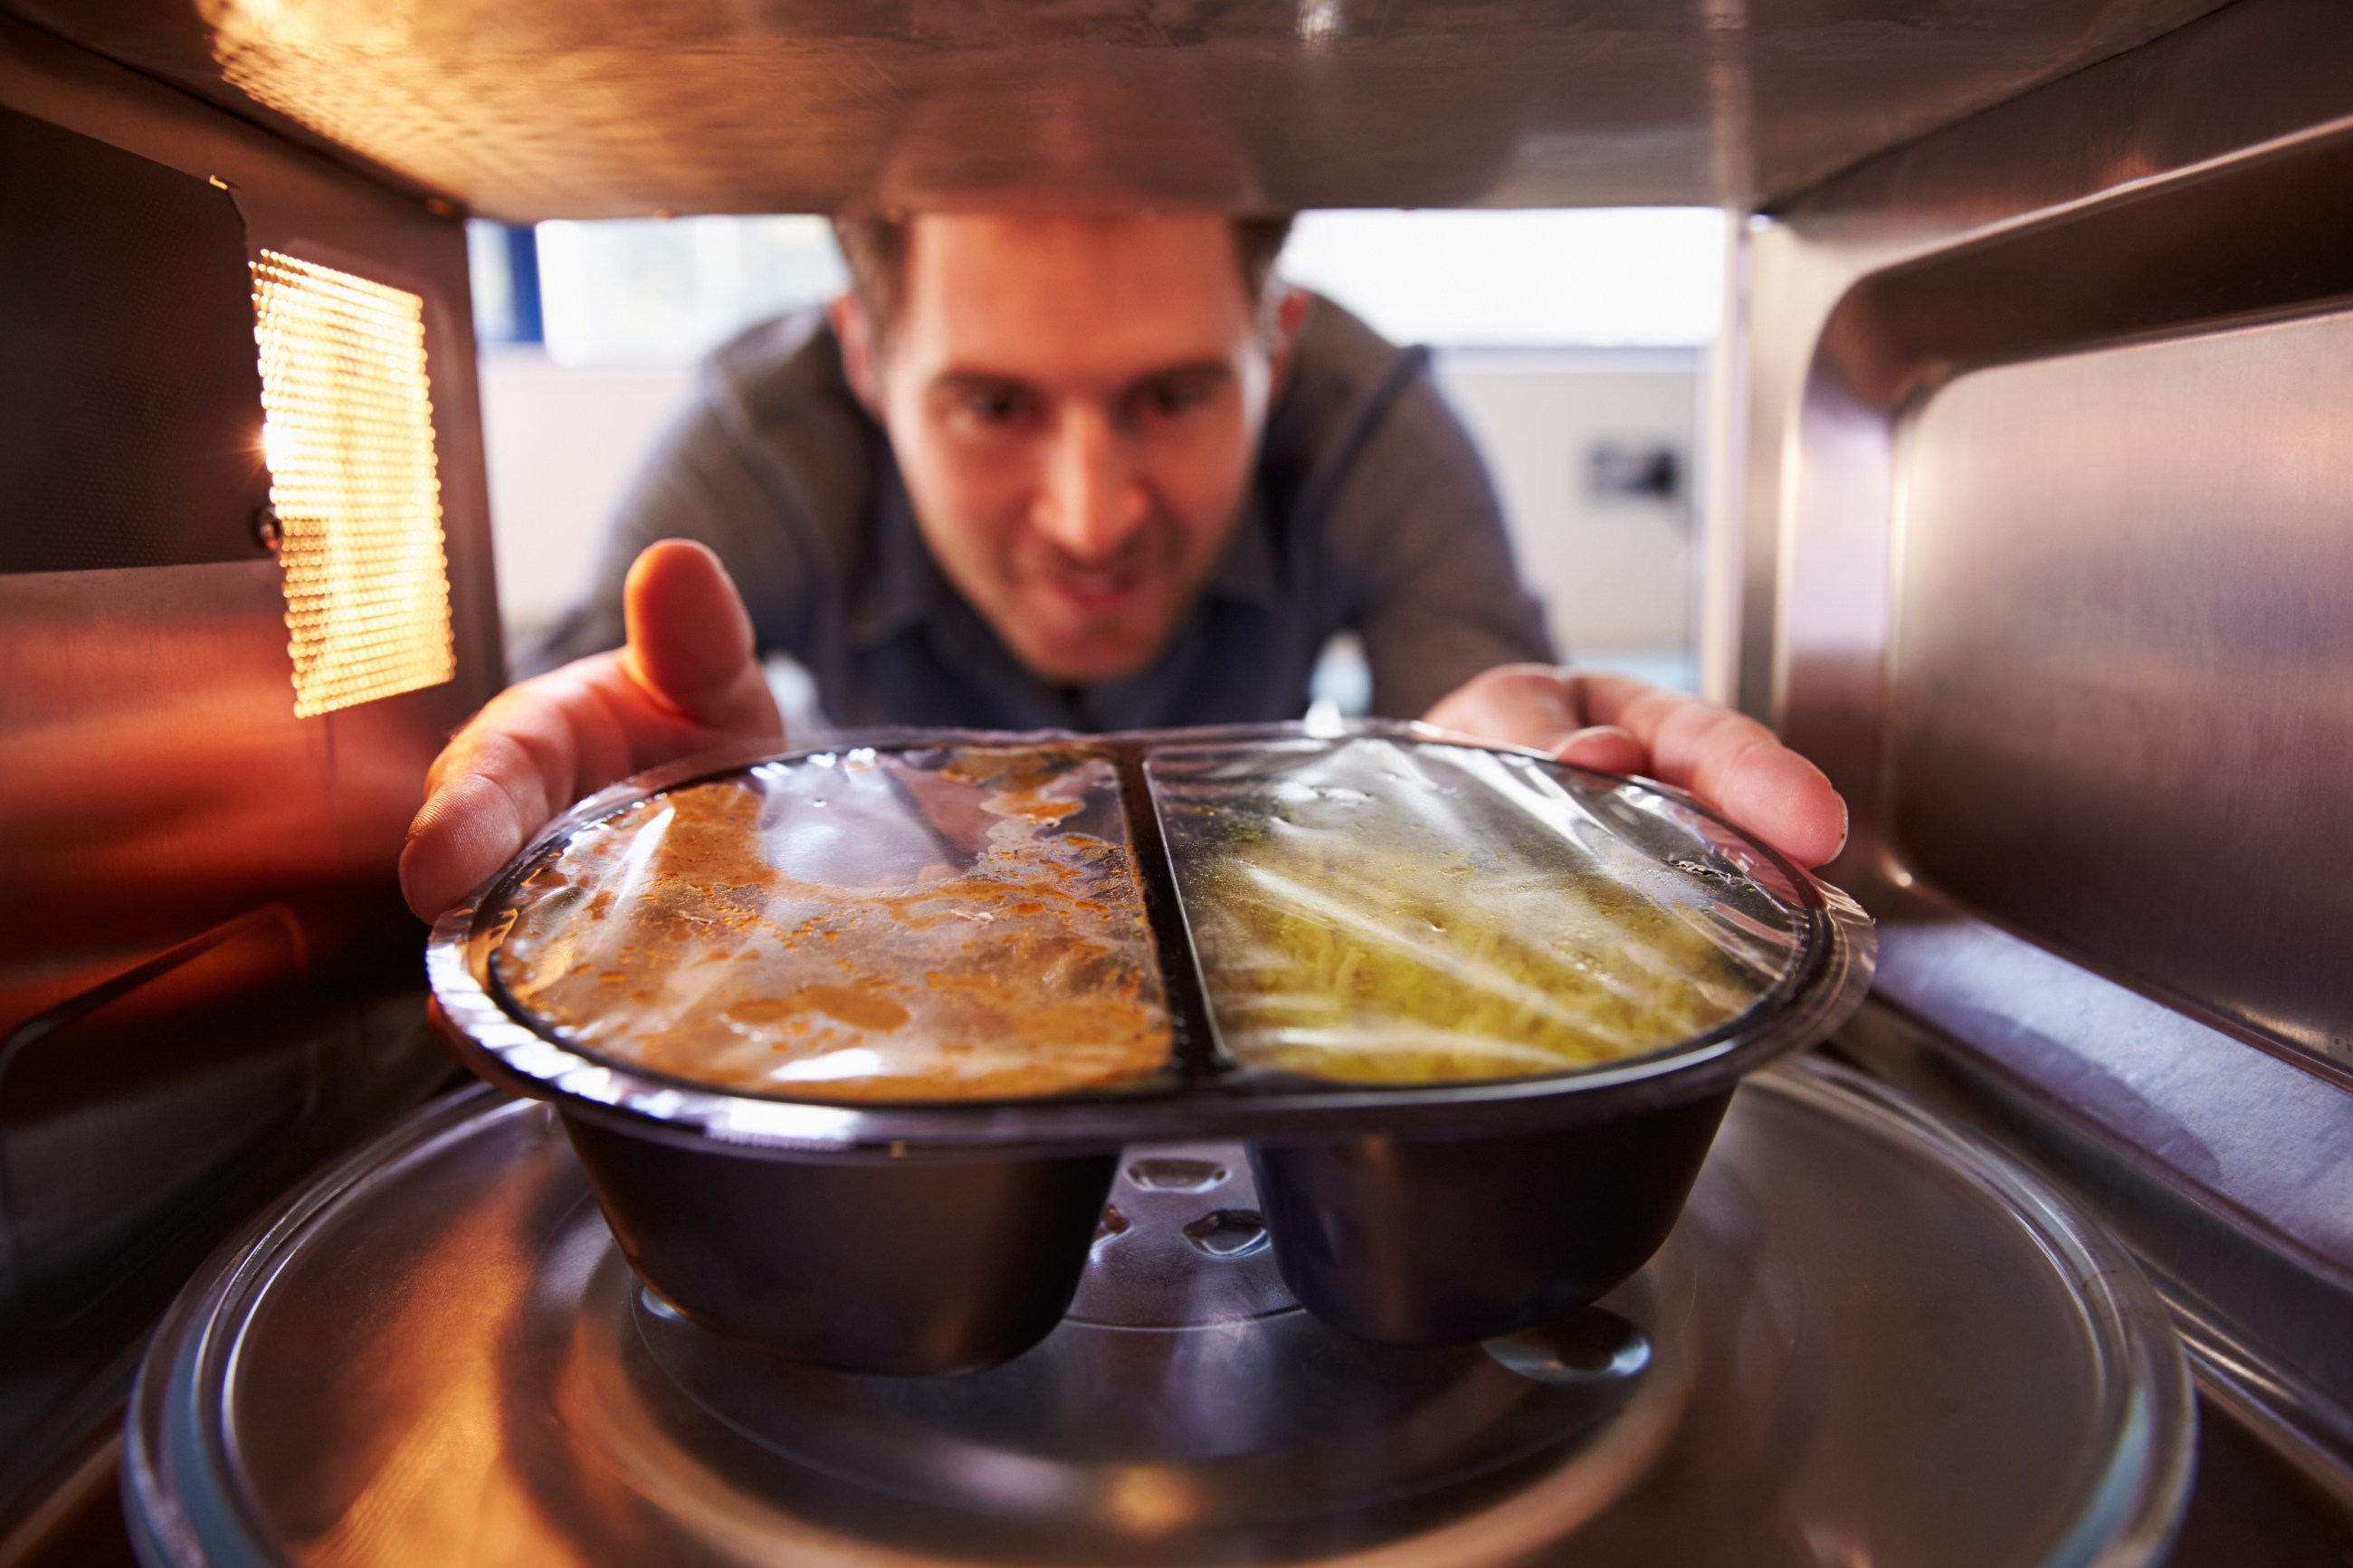 Cáncer: almacenar alimentos aún calientes en recipientes de plástico o goma  pone en riesgo - El Diario NY